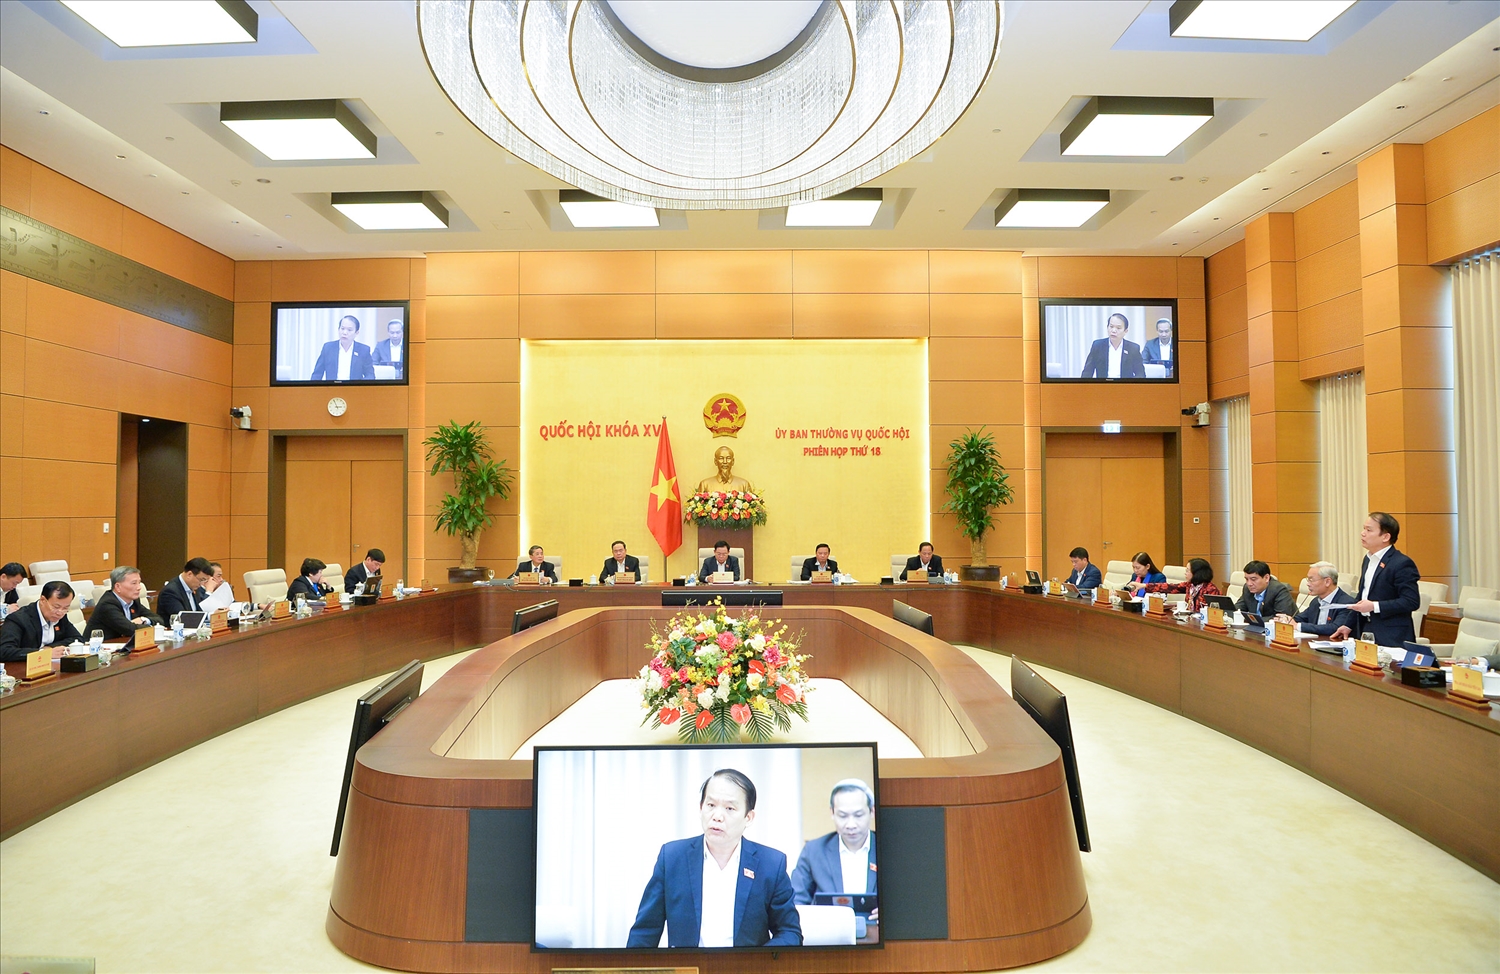 Chủ nhiệm Ủy ban Pháp luật Hoàng Thanh Tùng phát biểu ý kiến